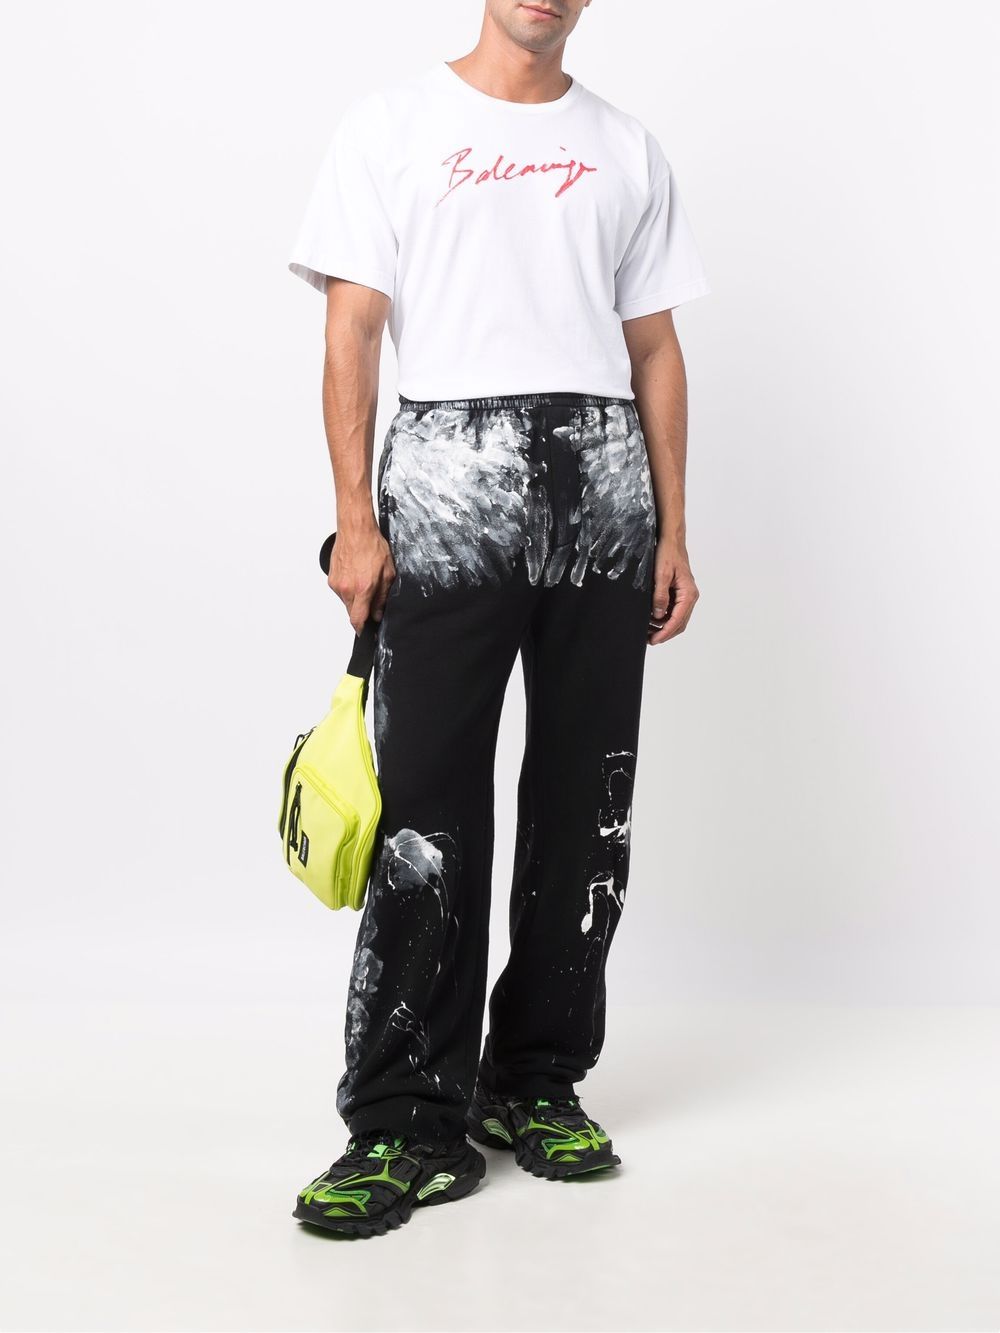 фото Balenciaga спортивные брюки с принтом